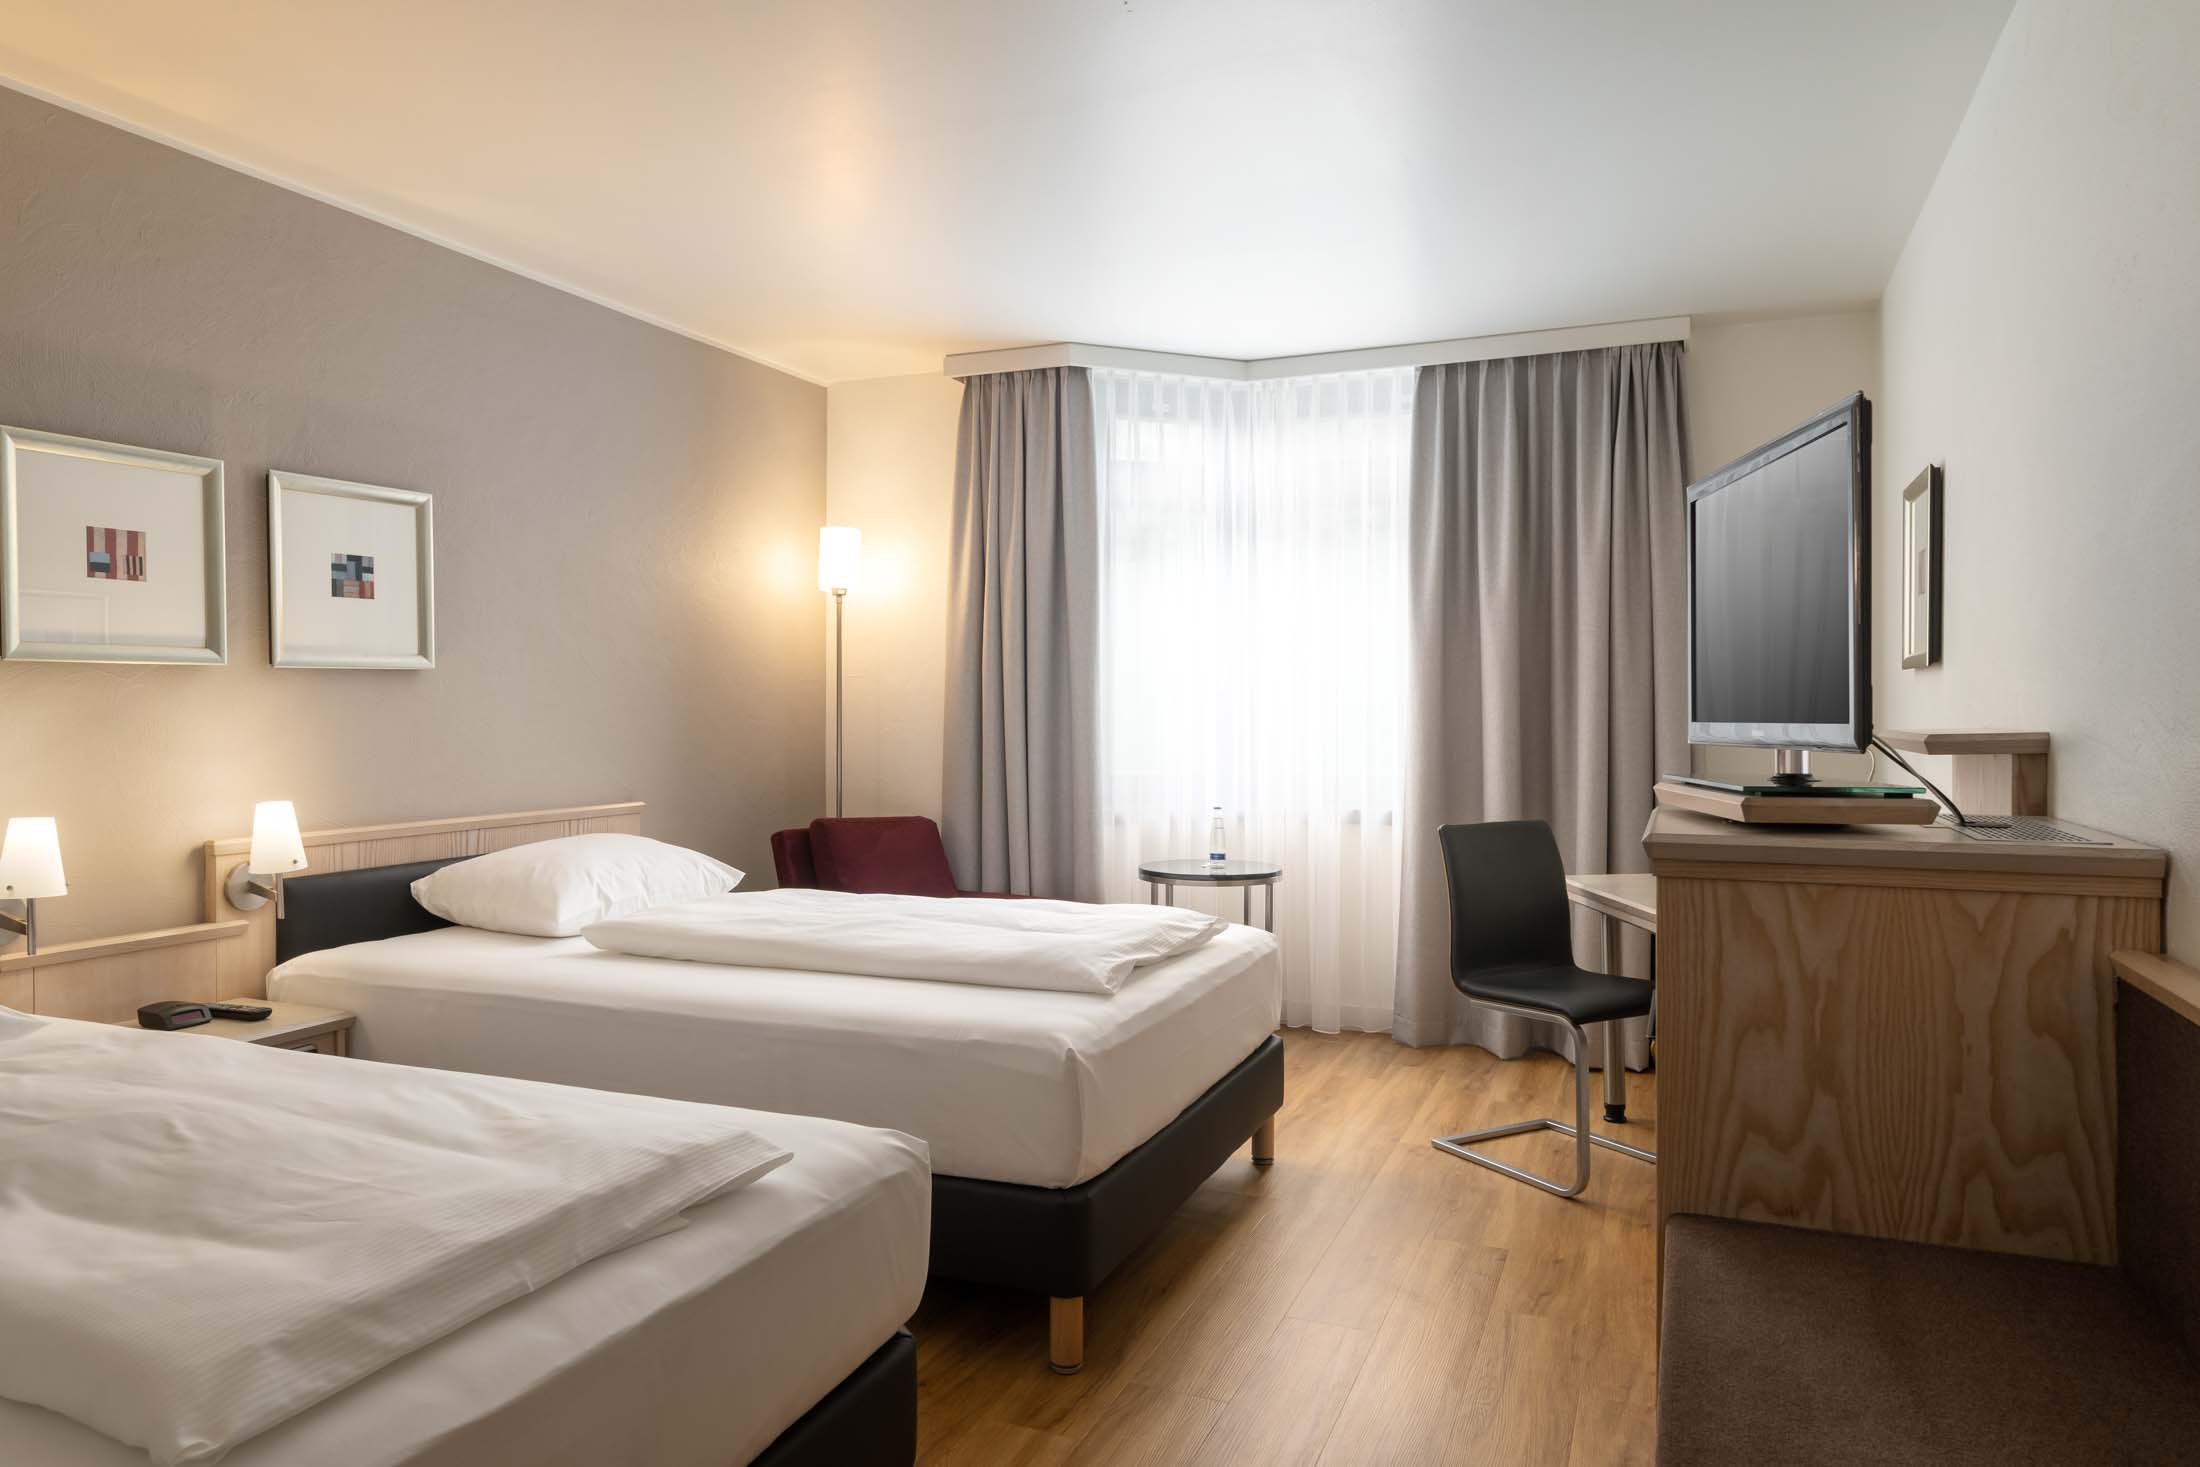 Hotelzimmer minimalistisch und clean